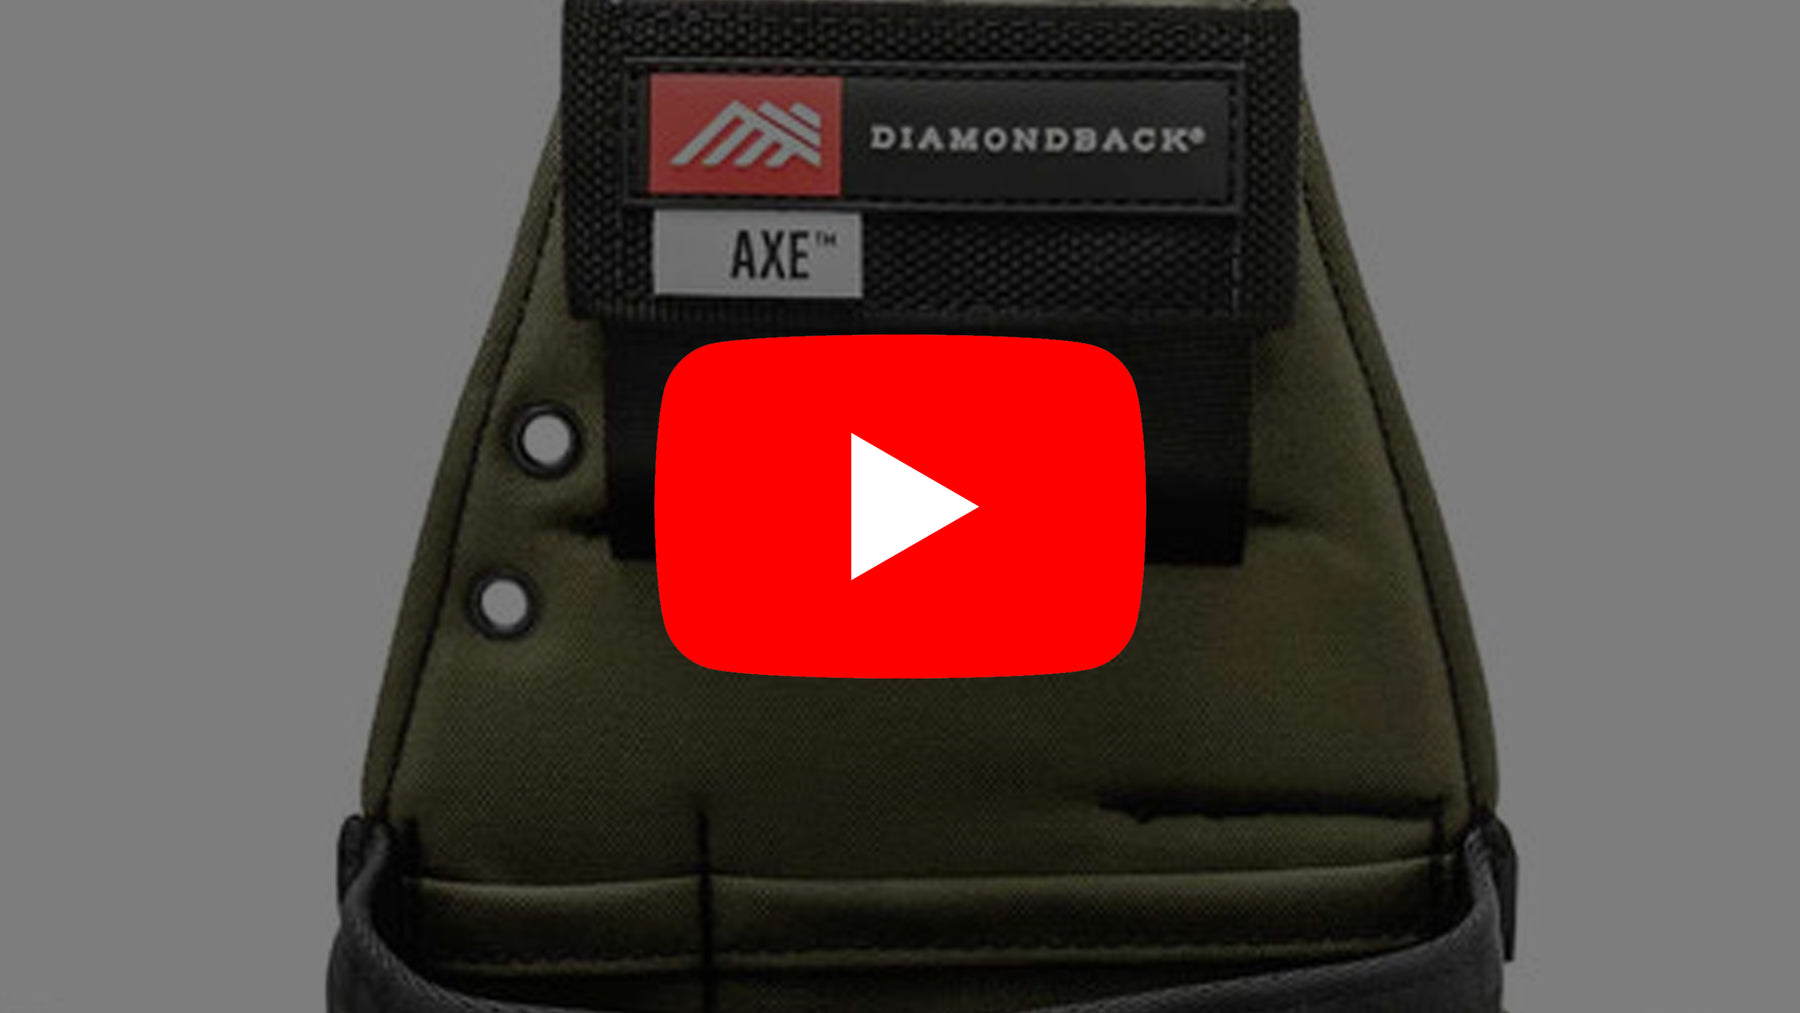 New YouTube Video - DiamondBack Axe pouch - TF Tools Ltd